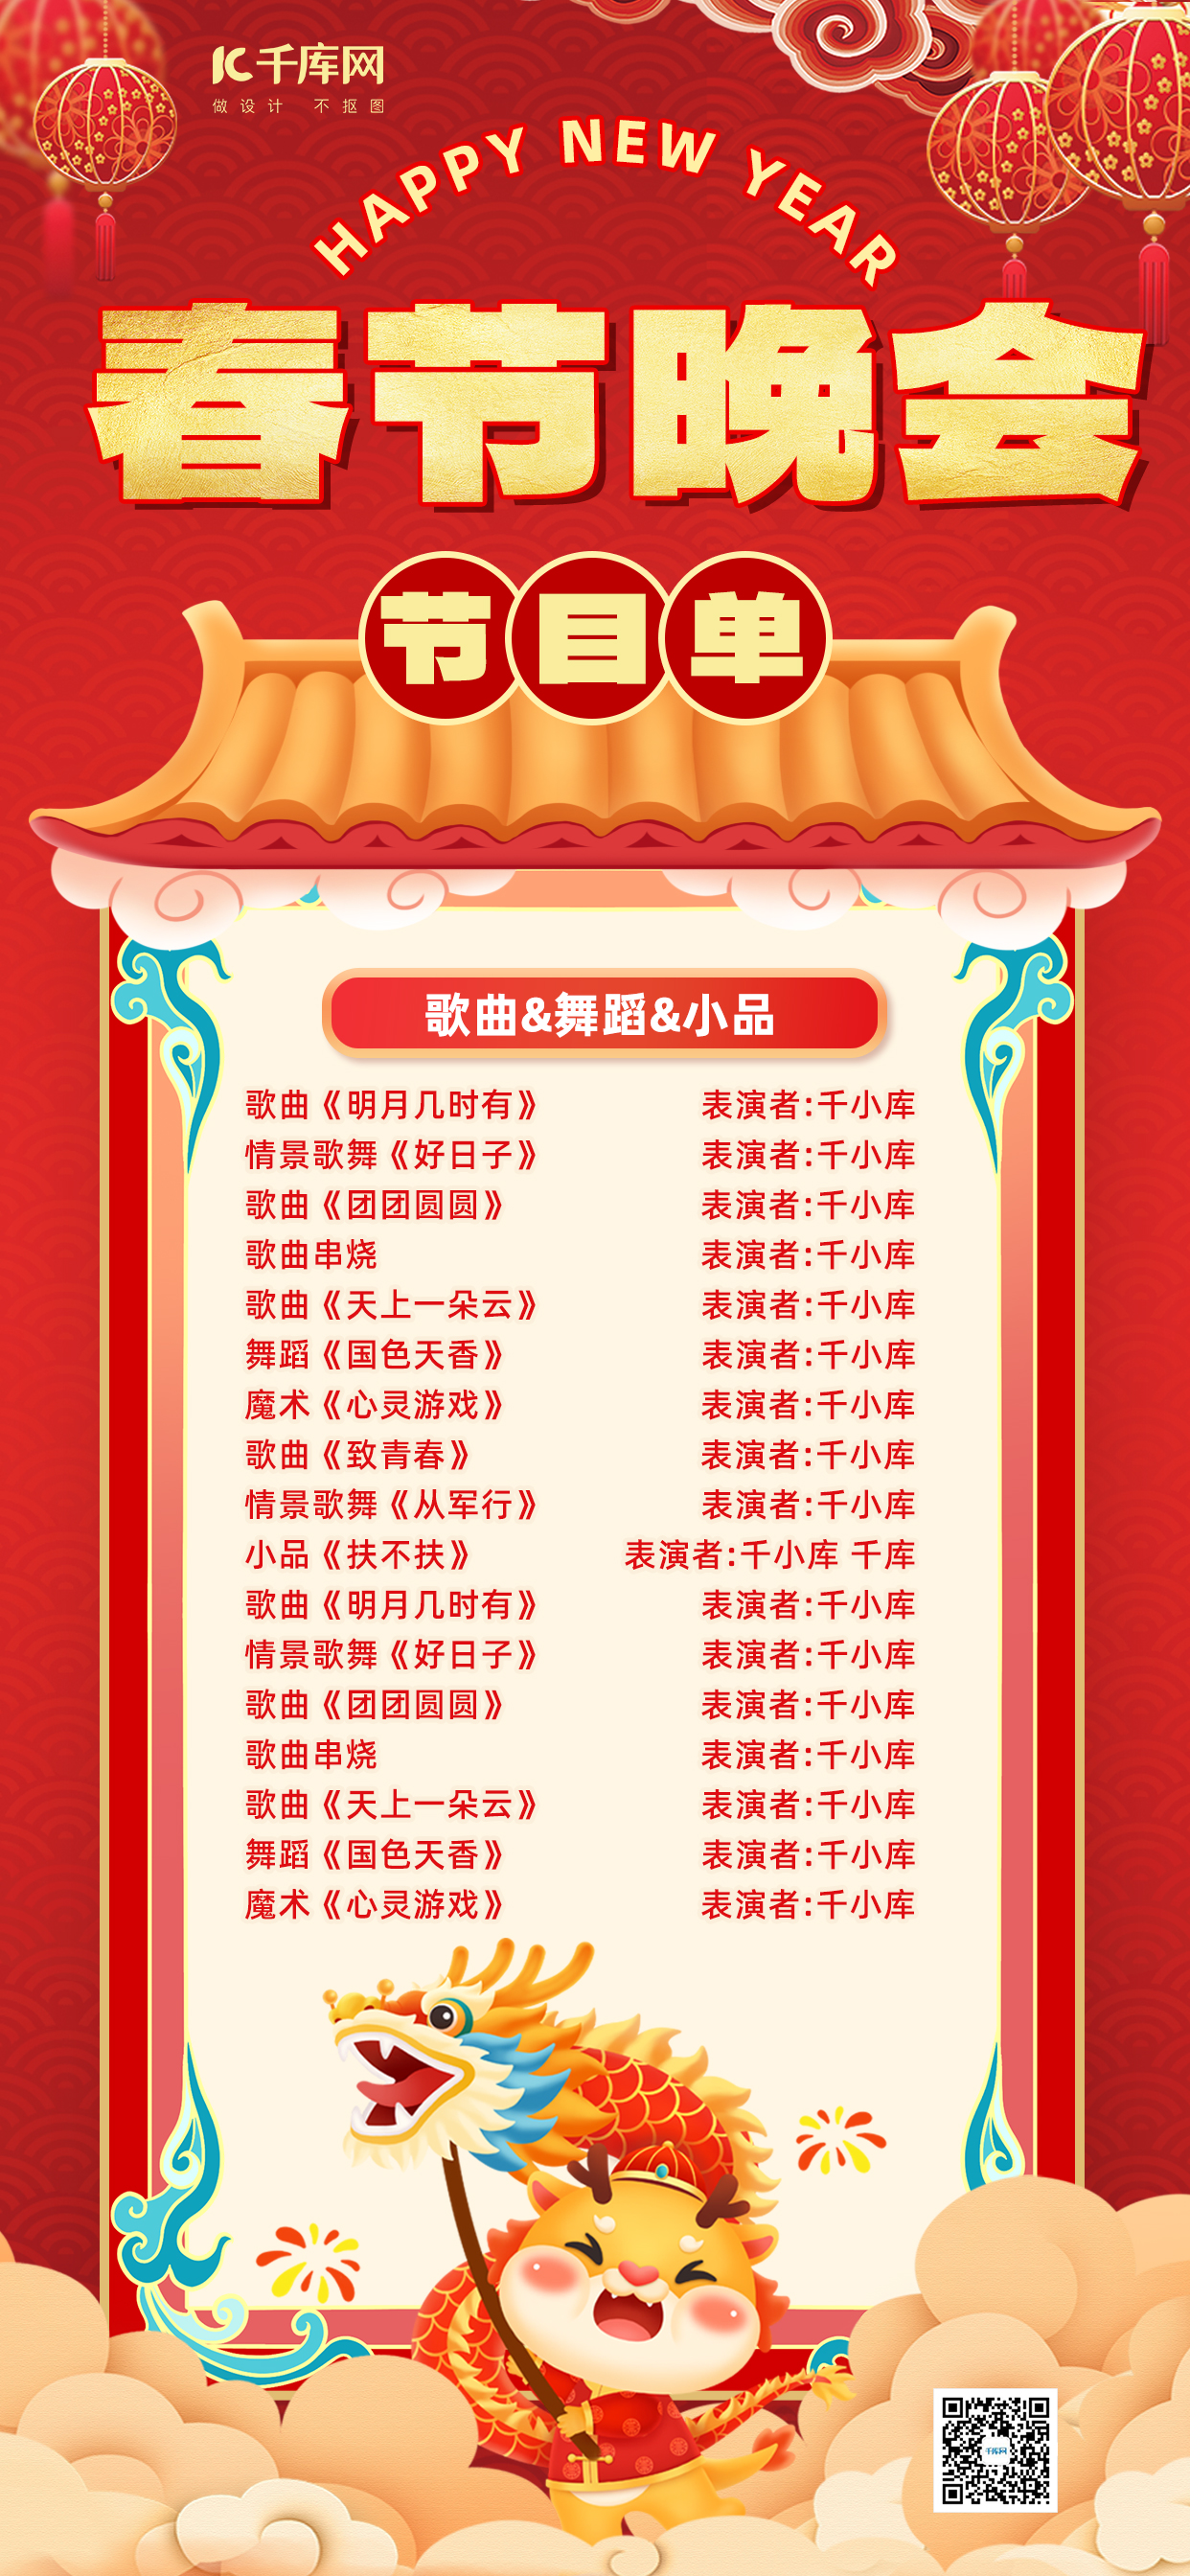 晚会节目单龙红色中国风全屏海报手机端海报设计素材图片